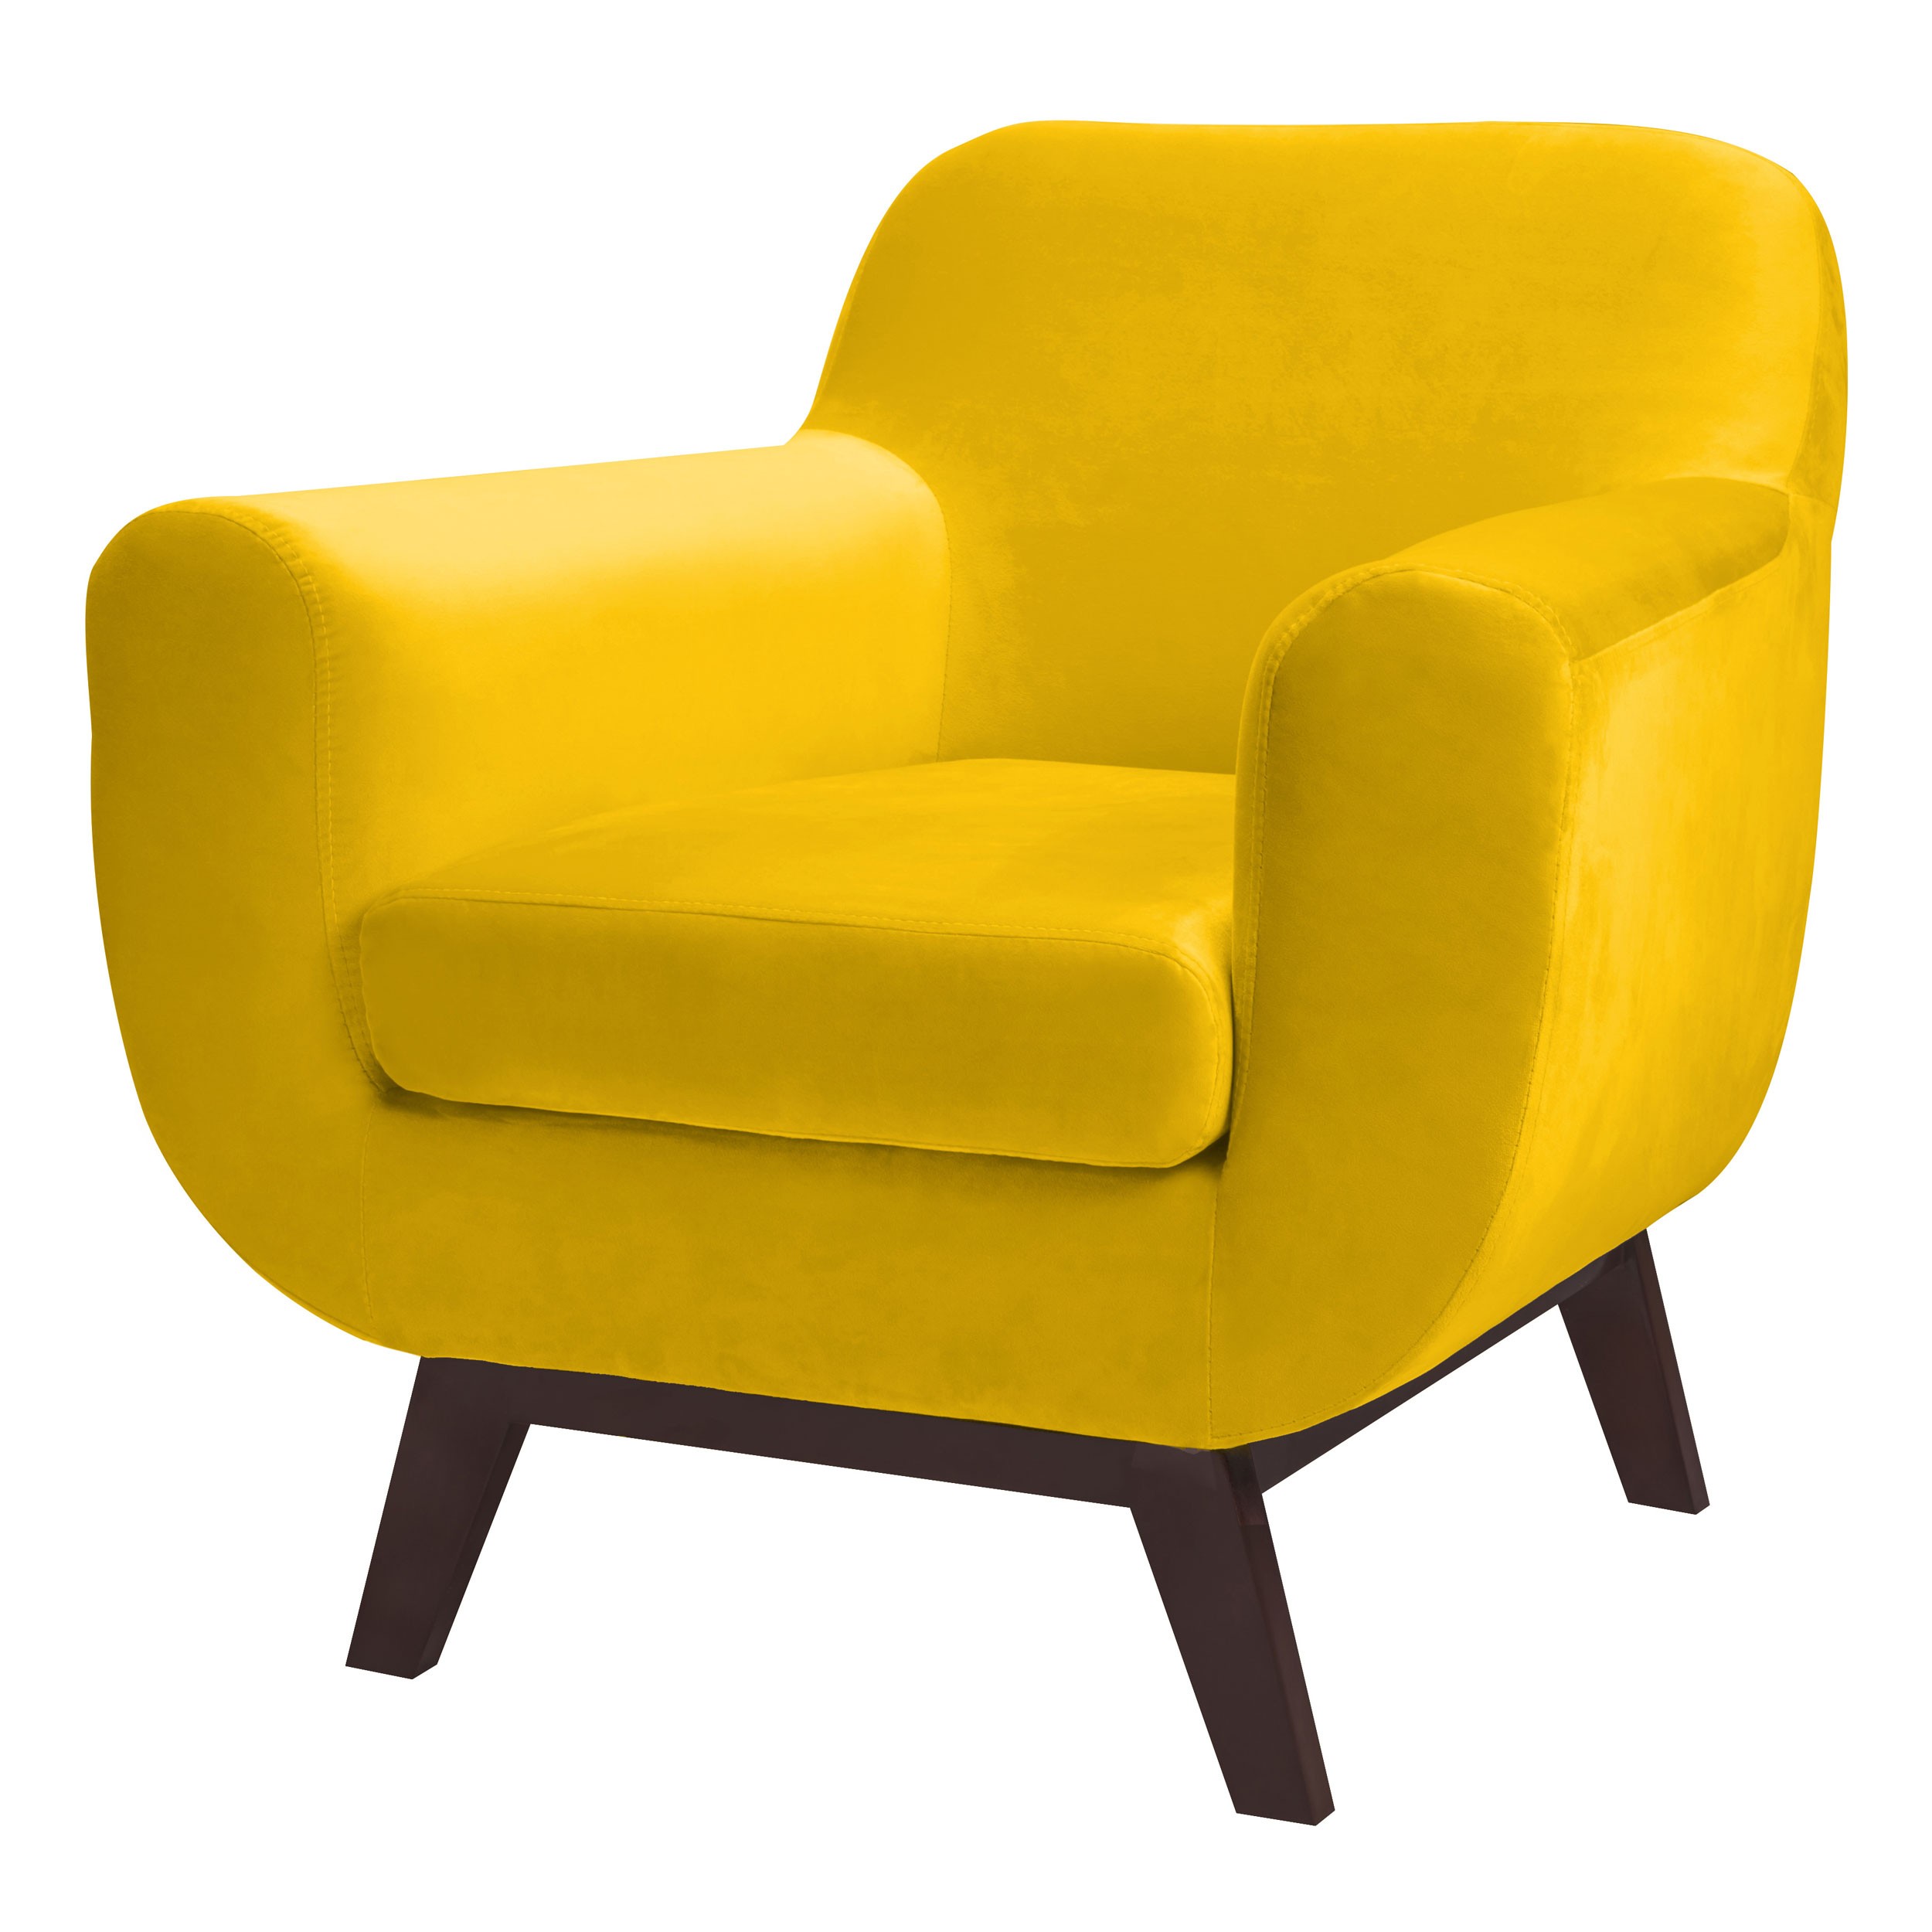 Fauteuil Copenhague en velours jaune : découvrez les fauteuils